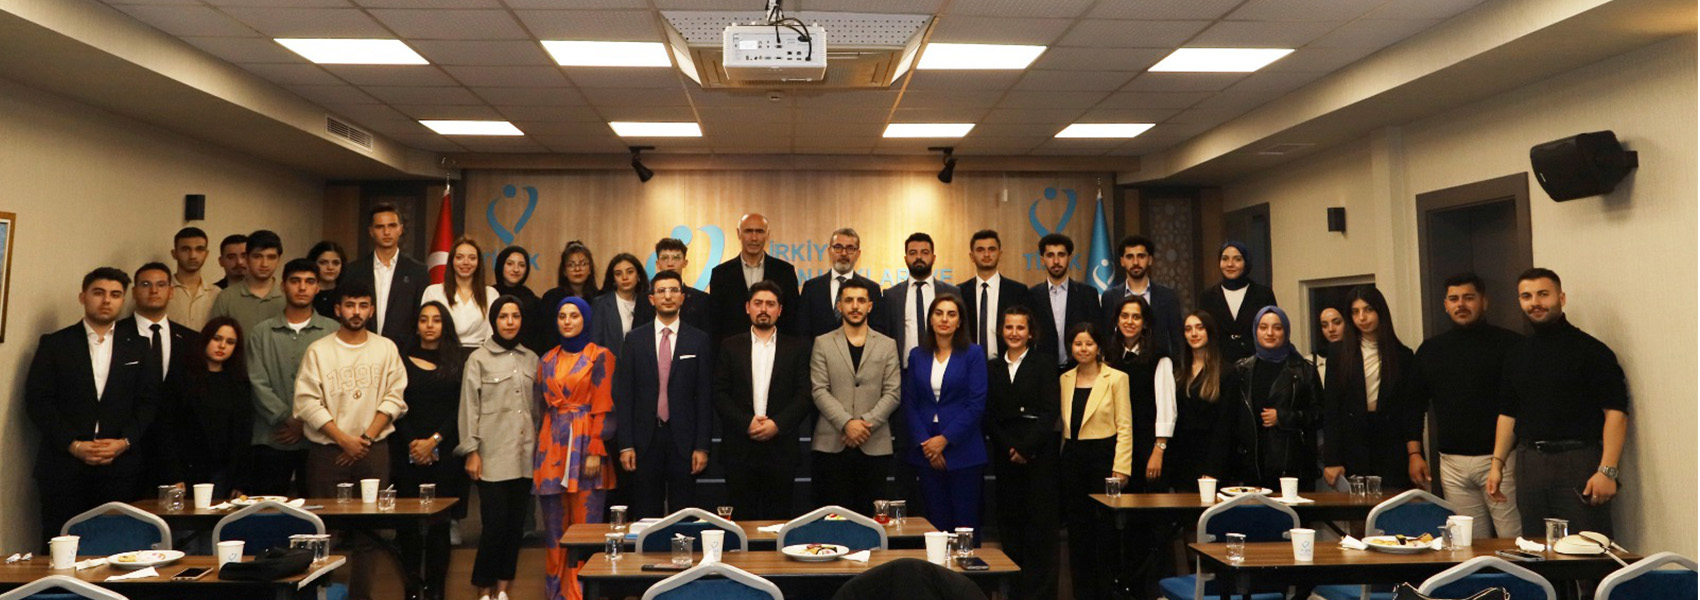 Trabzon Üniversitesi Öğrencileri Kurumumuzu Ziyaret Etti